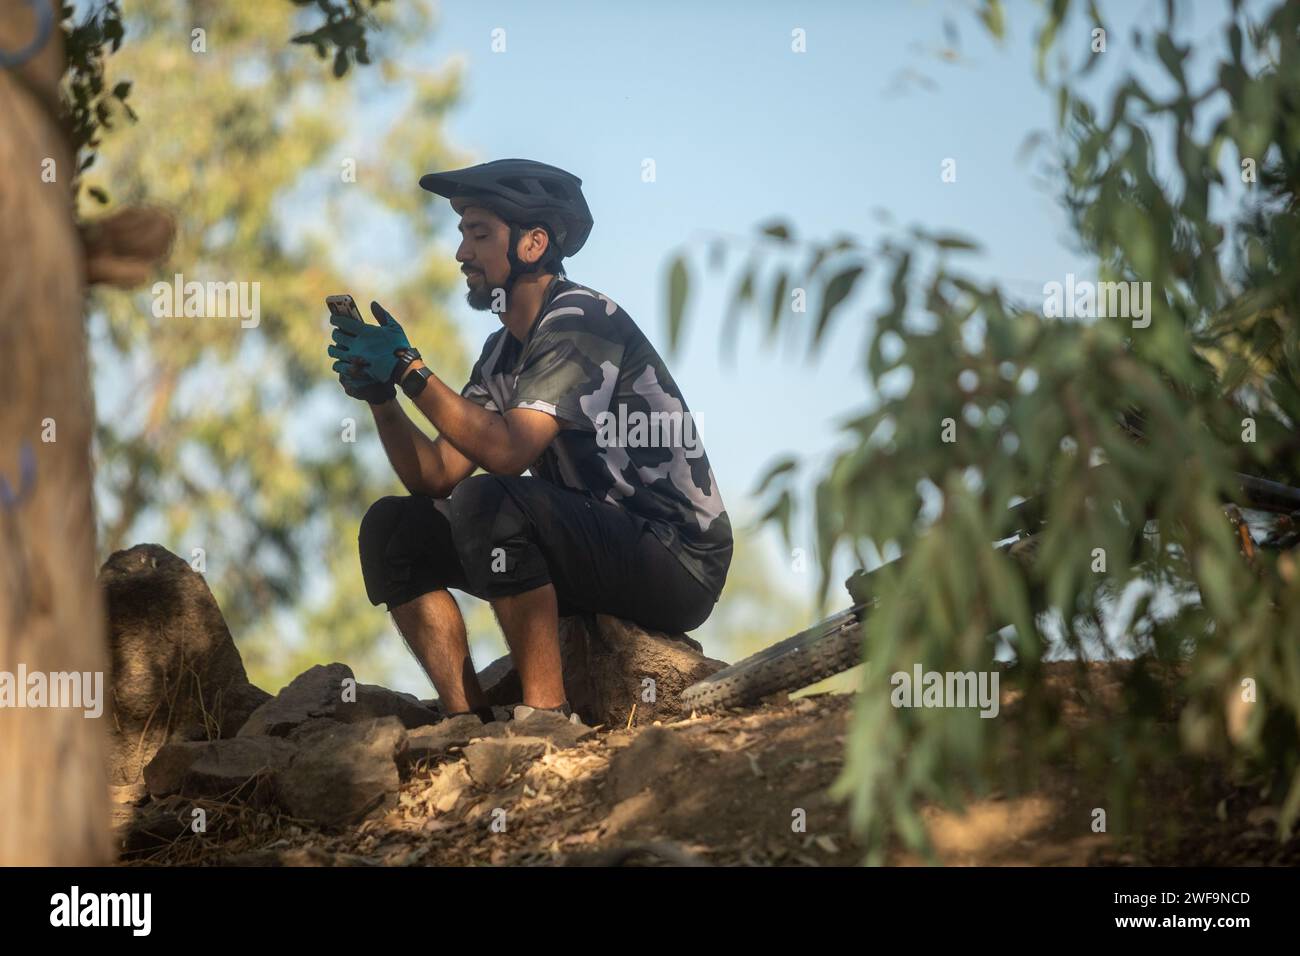 Cycliste masculin latino vérifiant son téléphone assis sur un rocher Banque D'Images